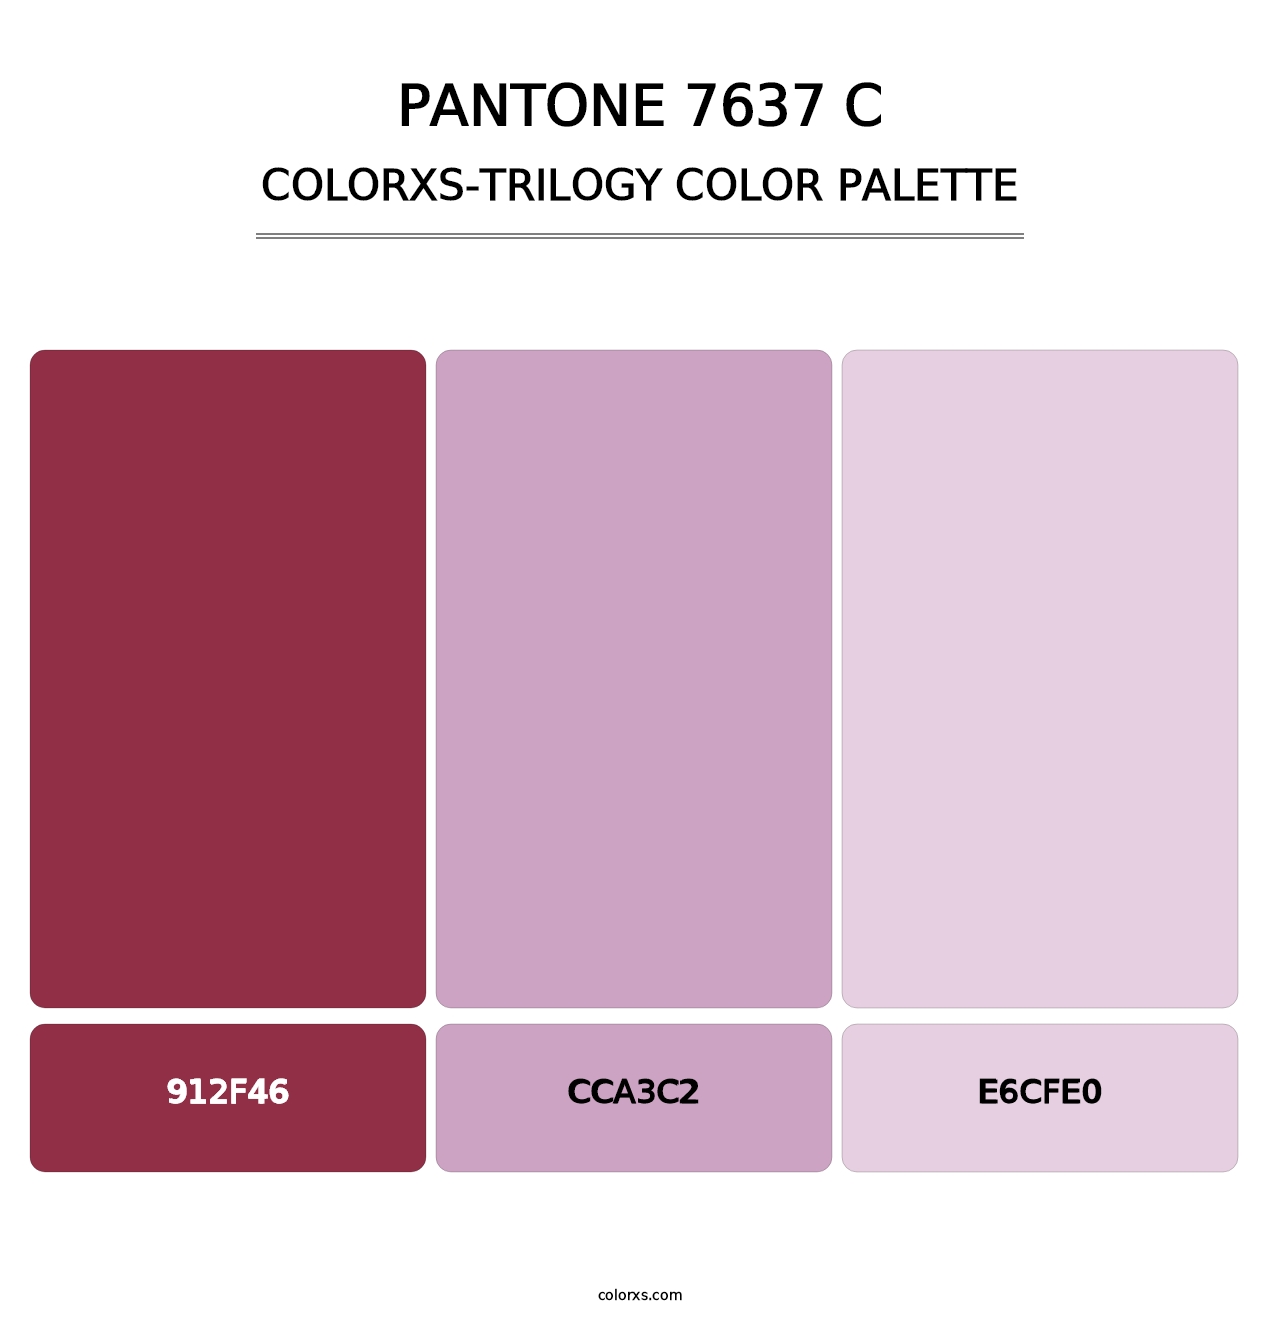 PANTONE 7637 C - Colorxs Trilogy Palette